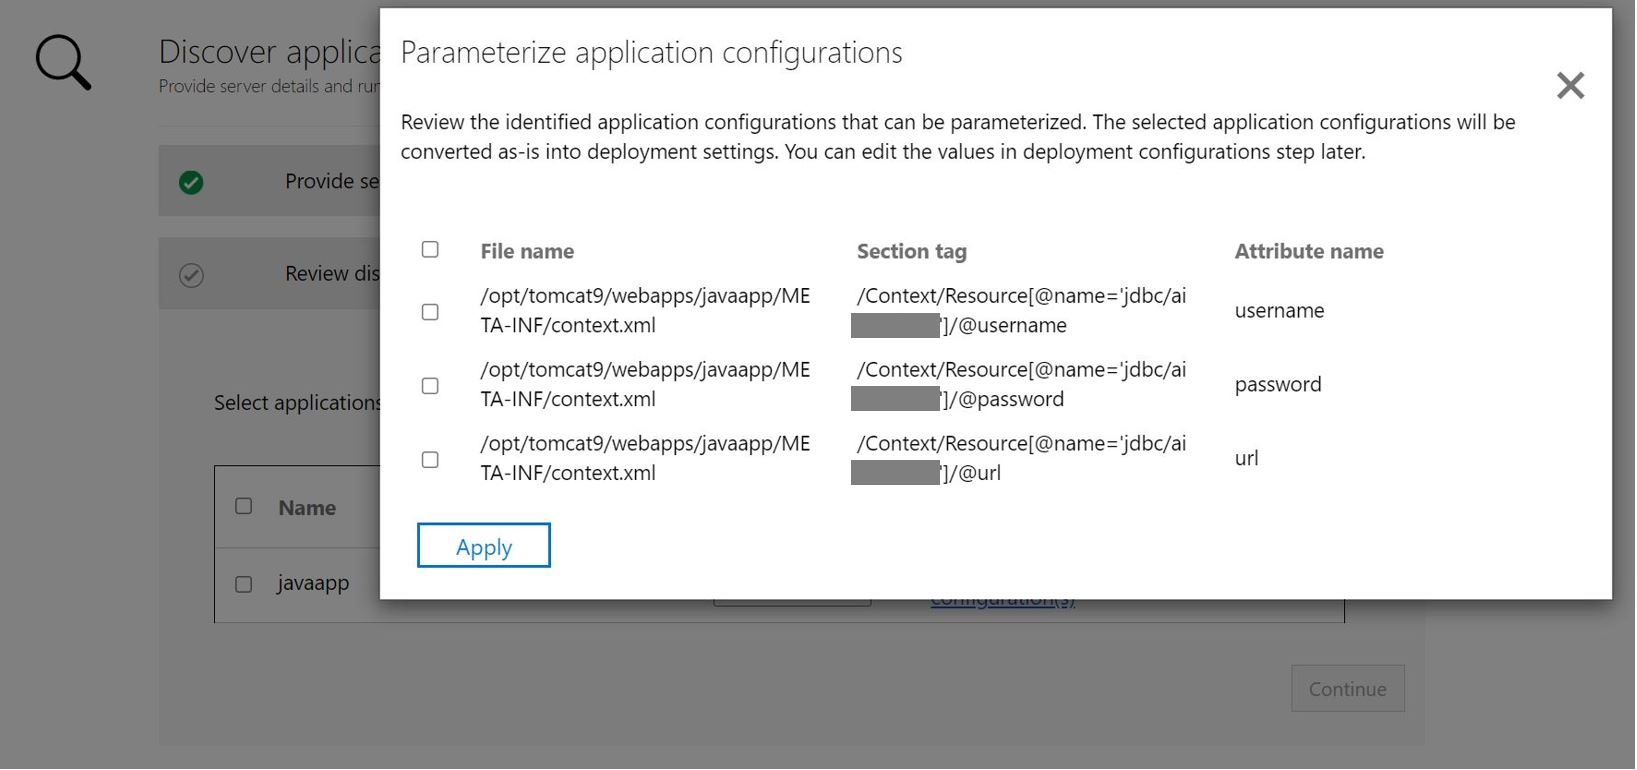 Captura de tela do aplicativo ASP.NET de parametrização da configuração do aplicativo.